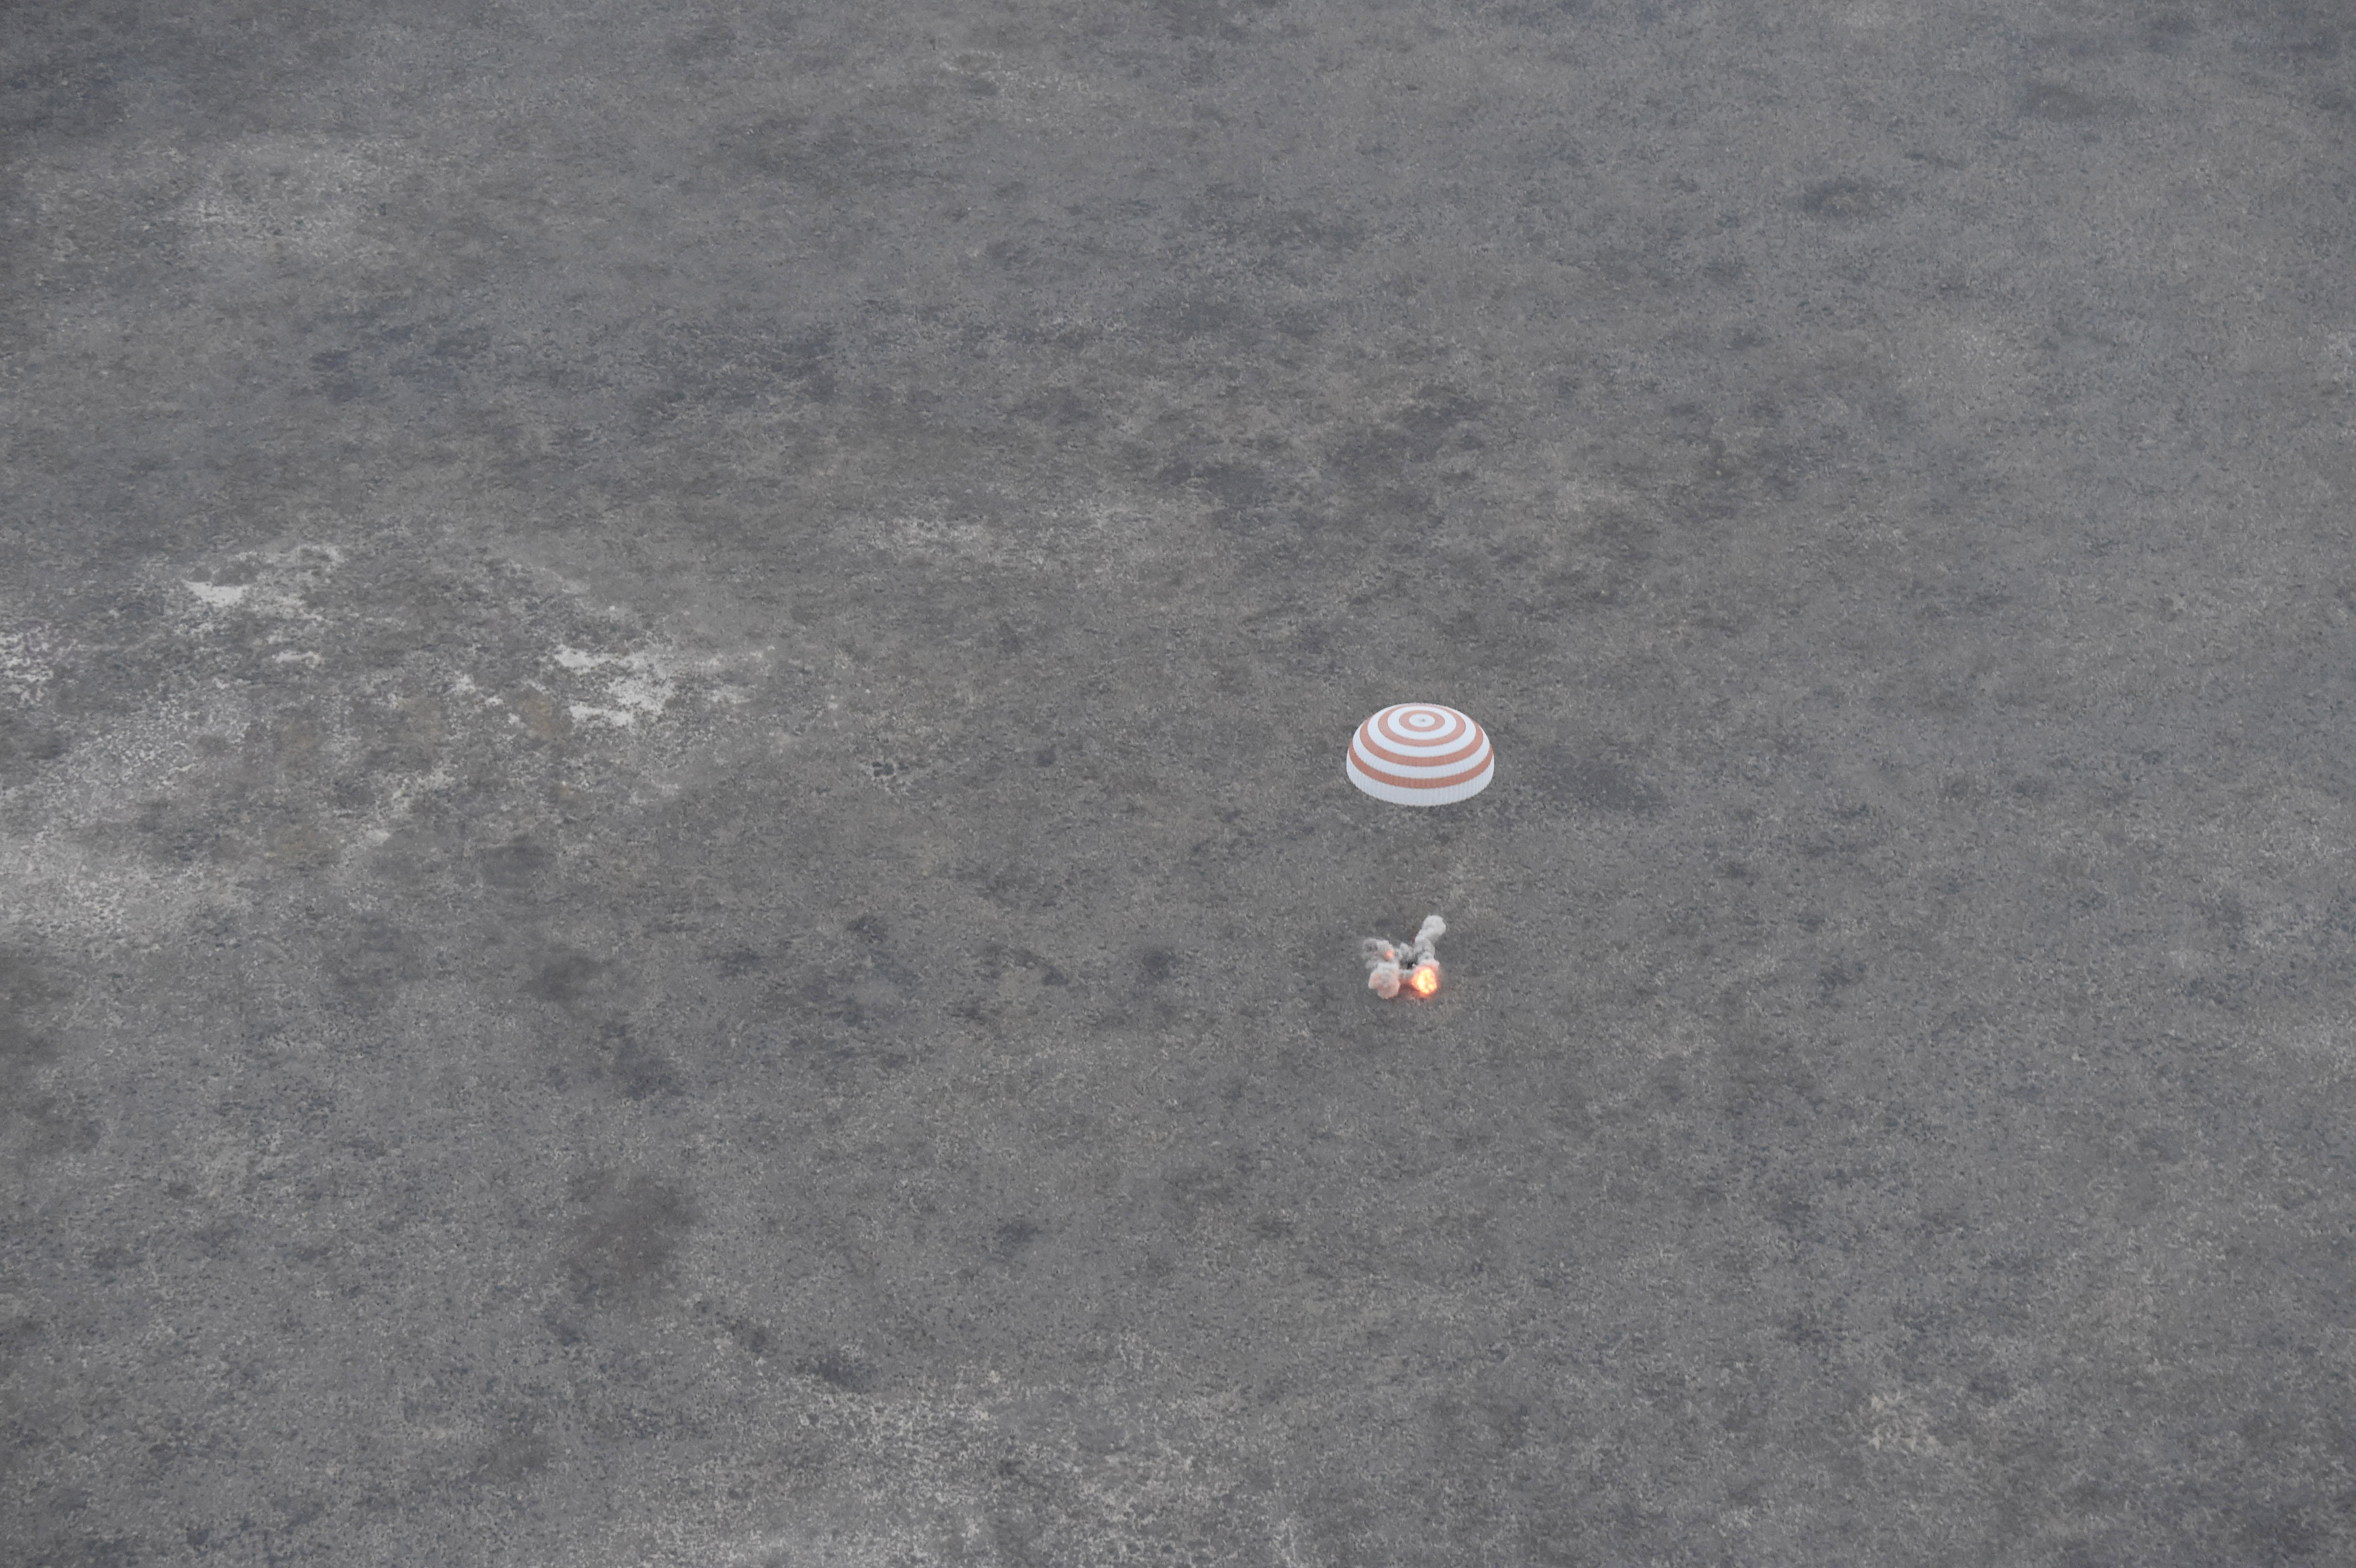 Soyuz_TMA-16M_landing.jpg